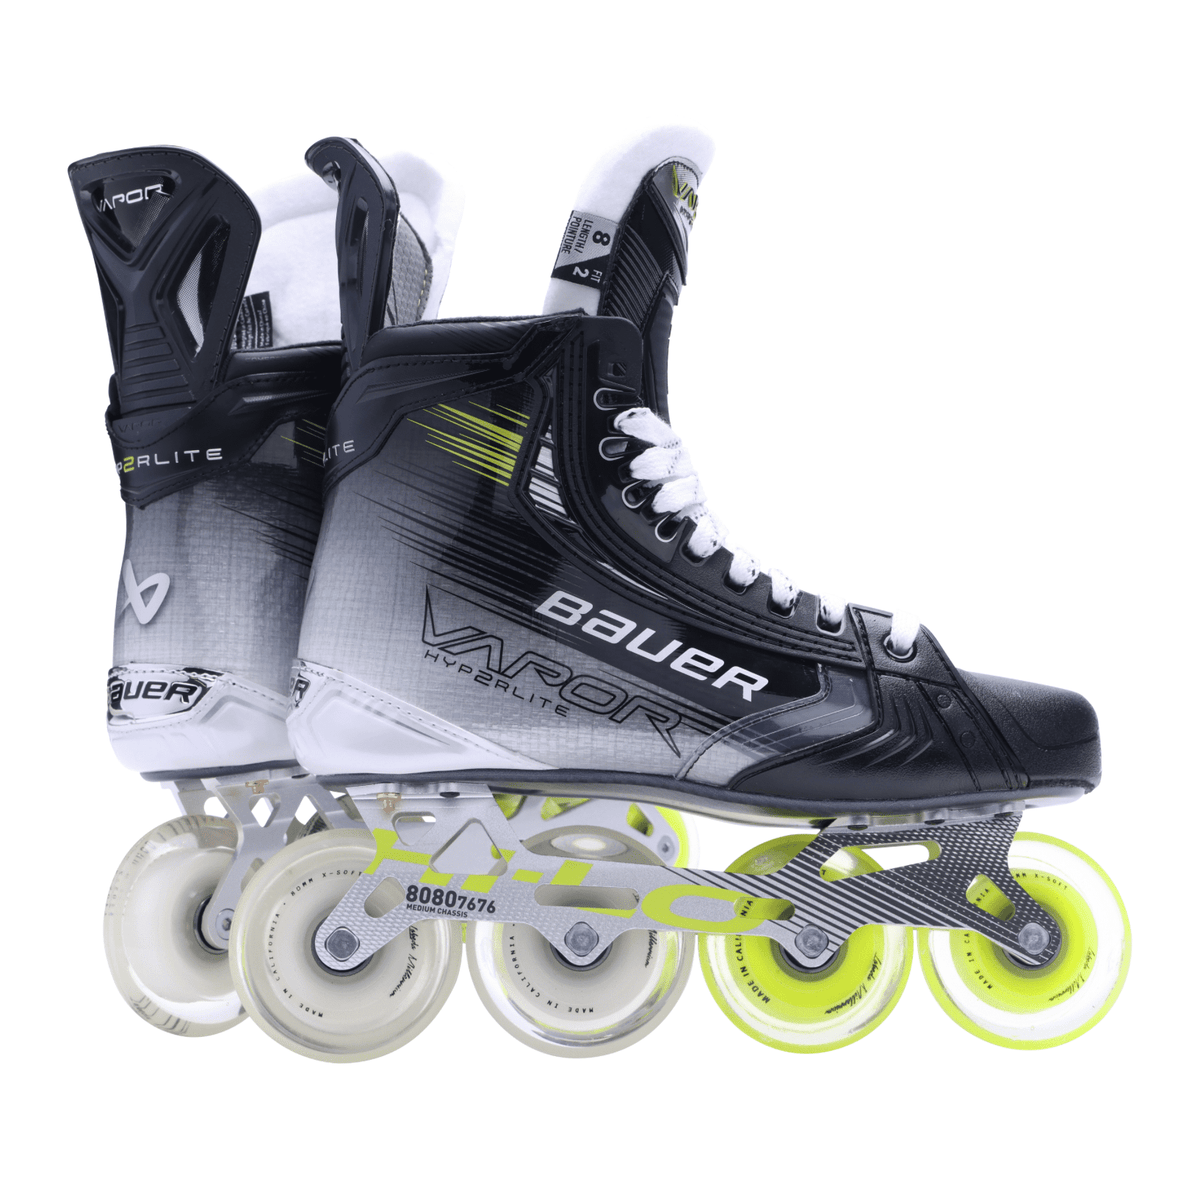 Bauer Vapor Hyperlite 2 Inline Hockey Skates